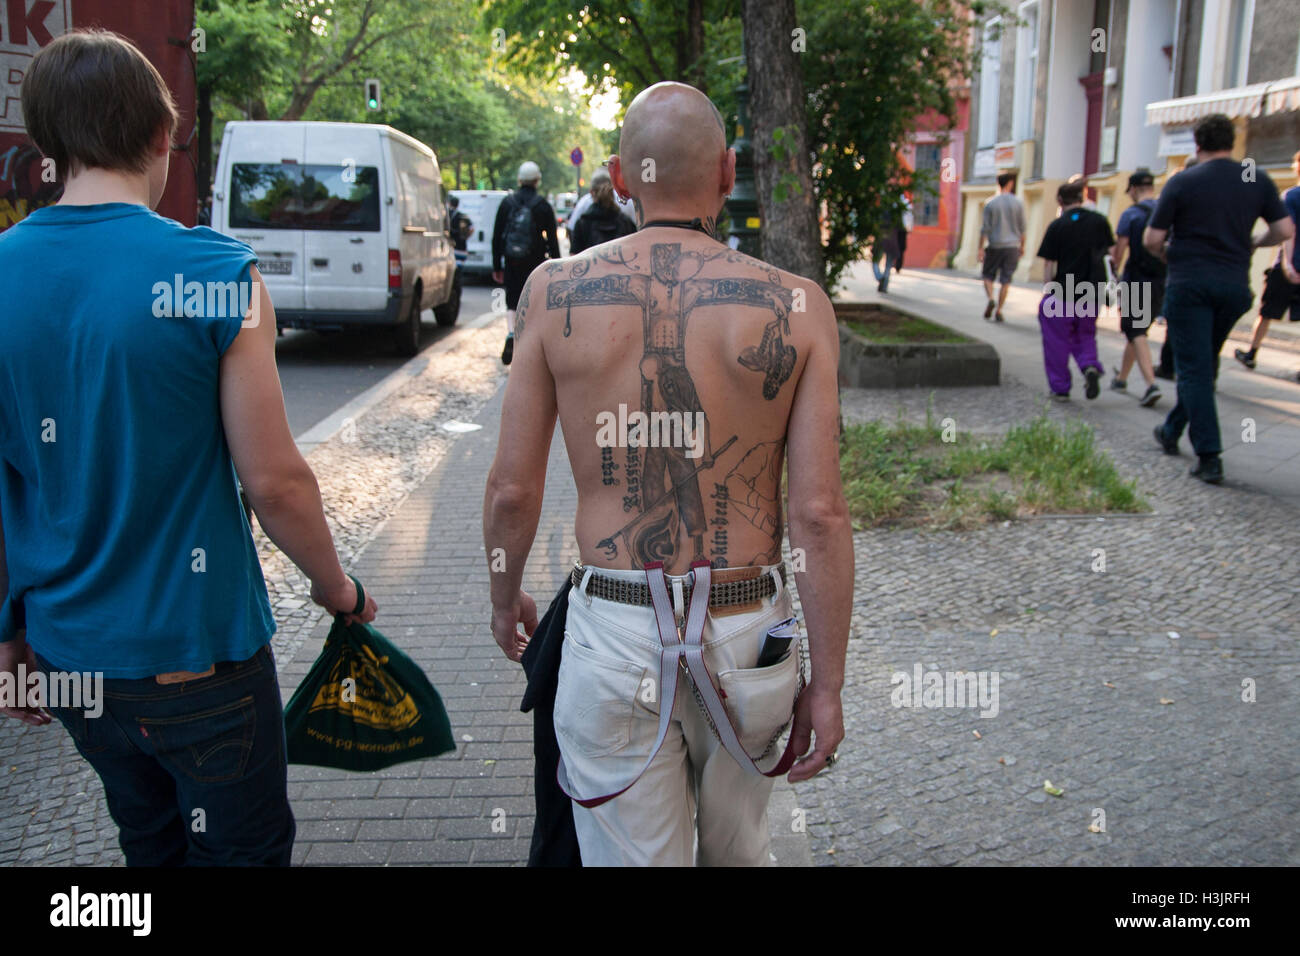 Anti-Fascist dimostrazione. (Tatuaggio: Skinheads contro il razzismo). Berlino, Germania. Foto Stock